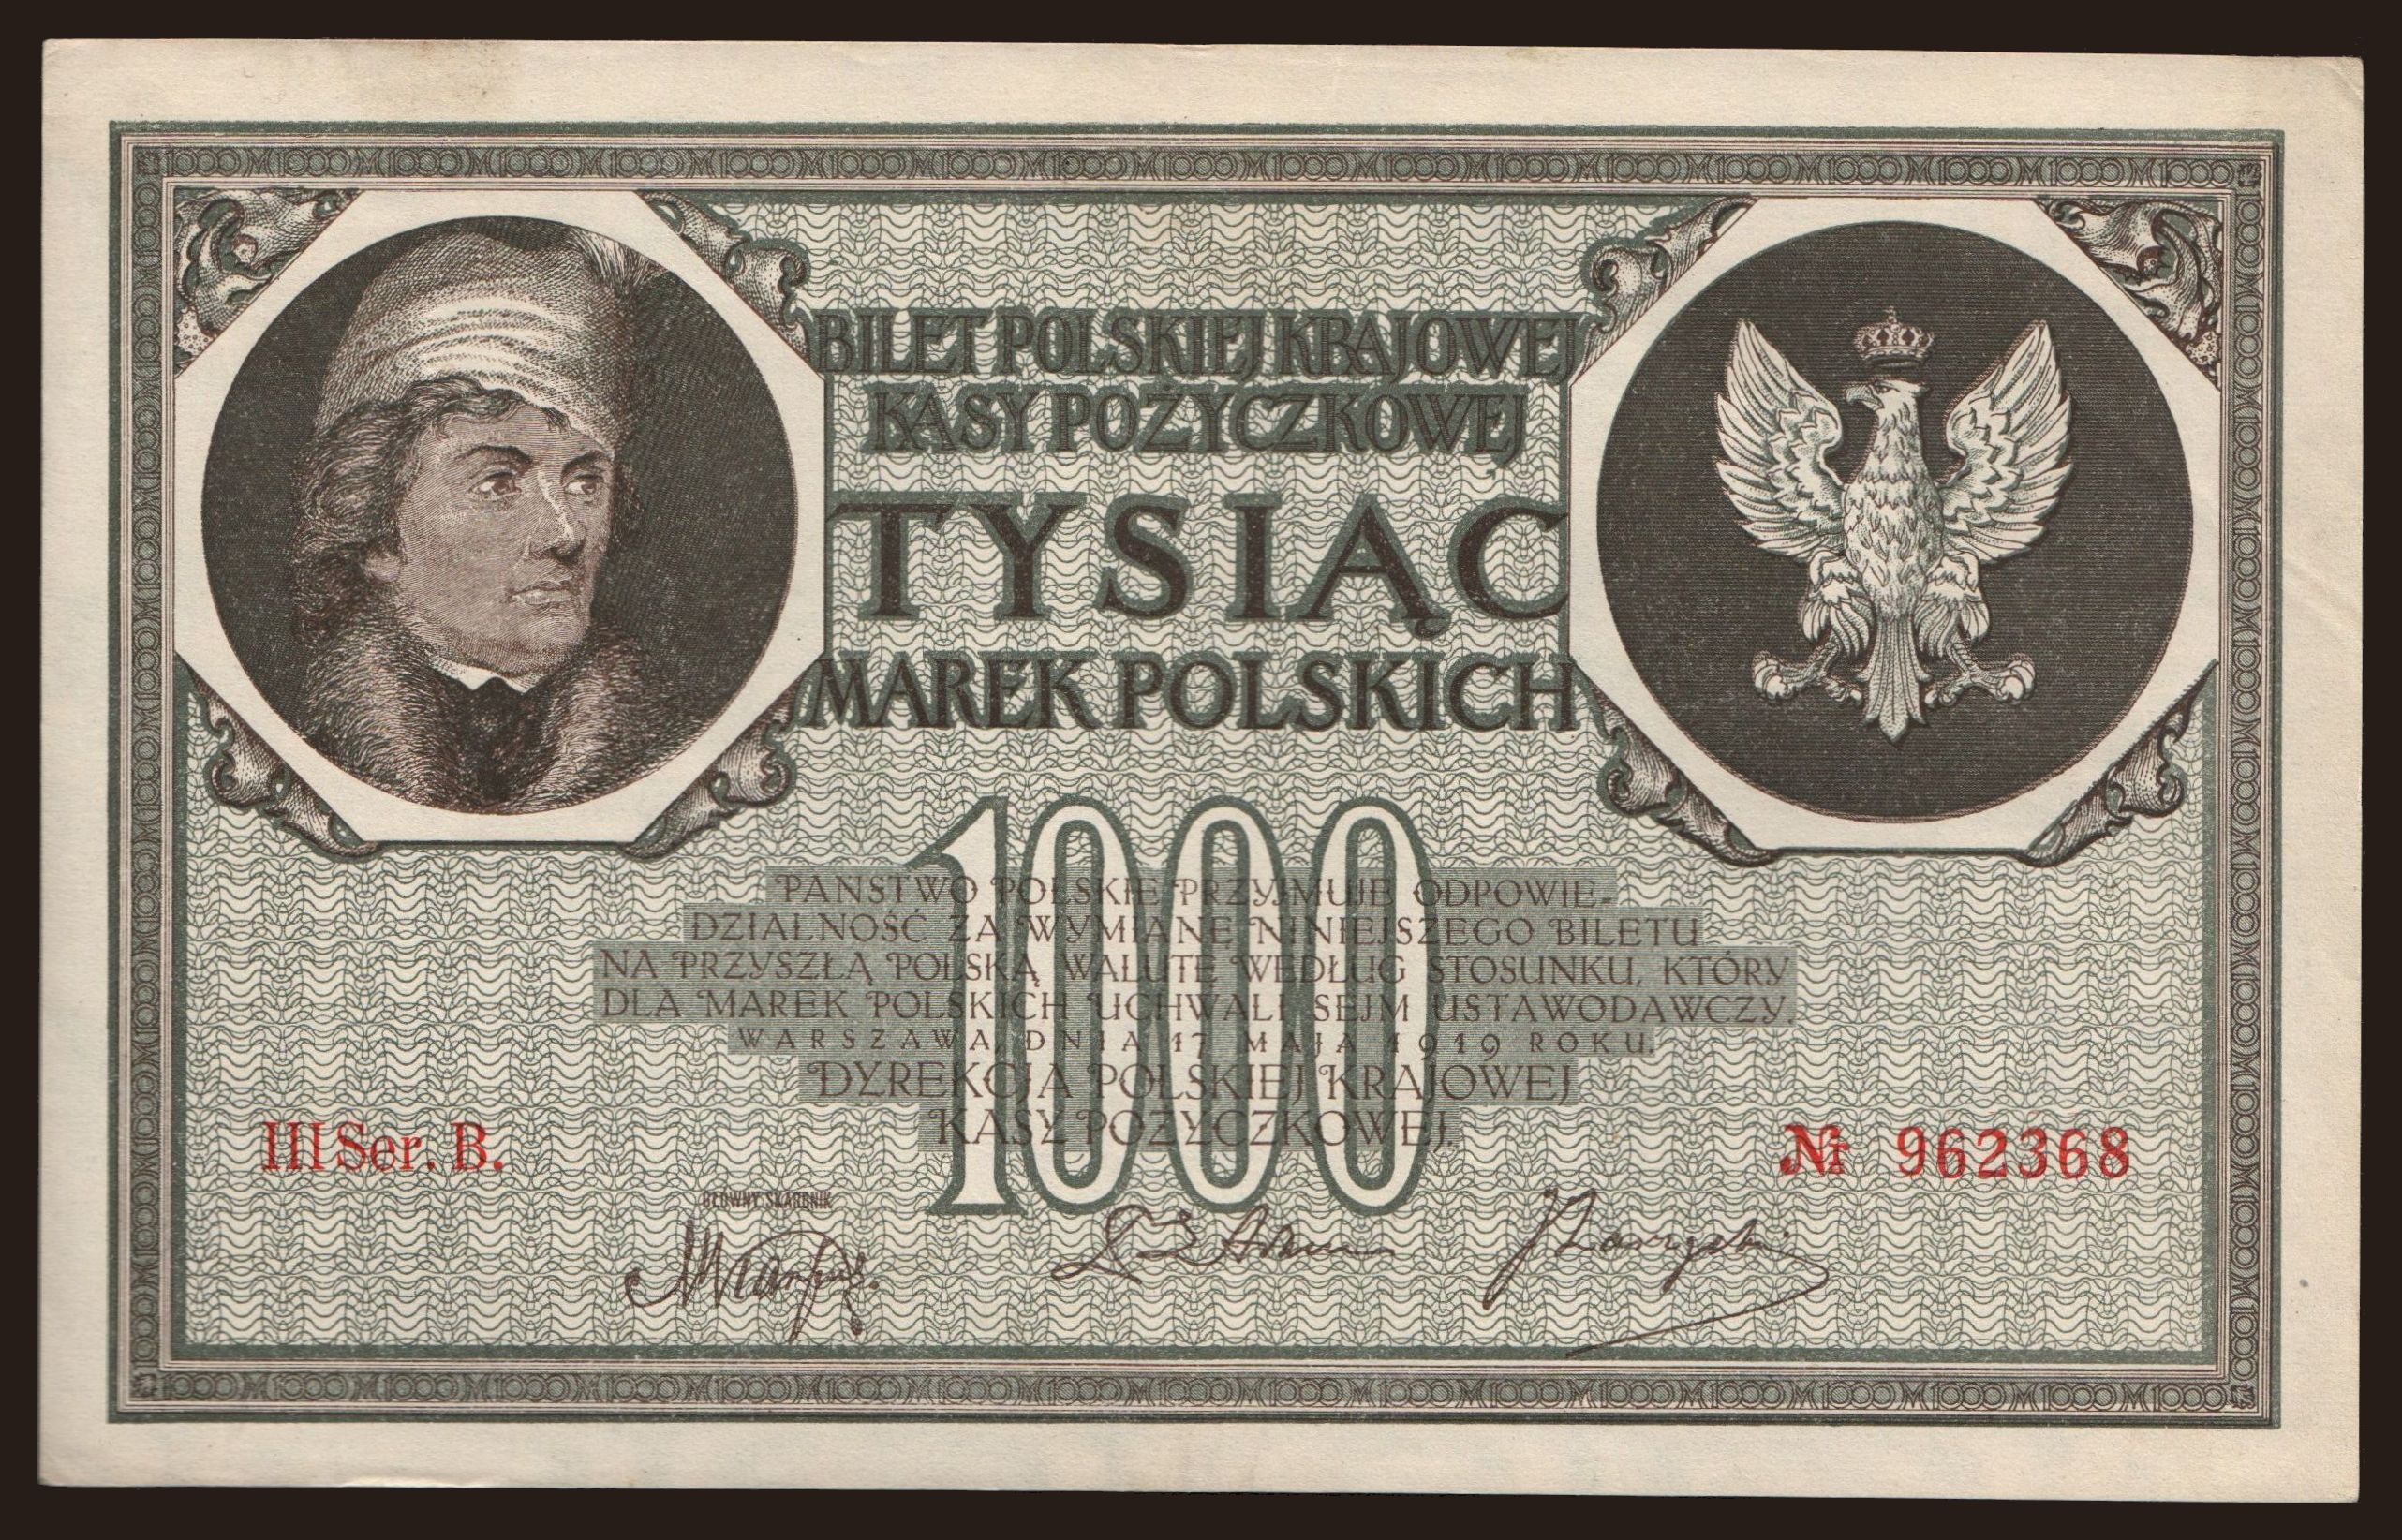 1000 marek, 1919